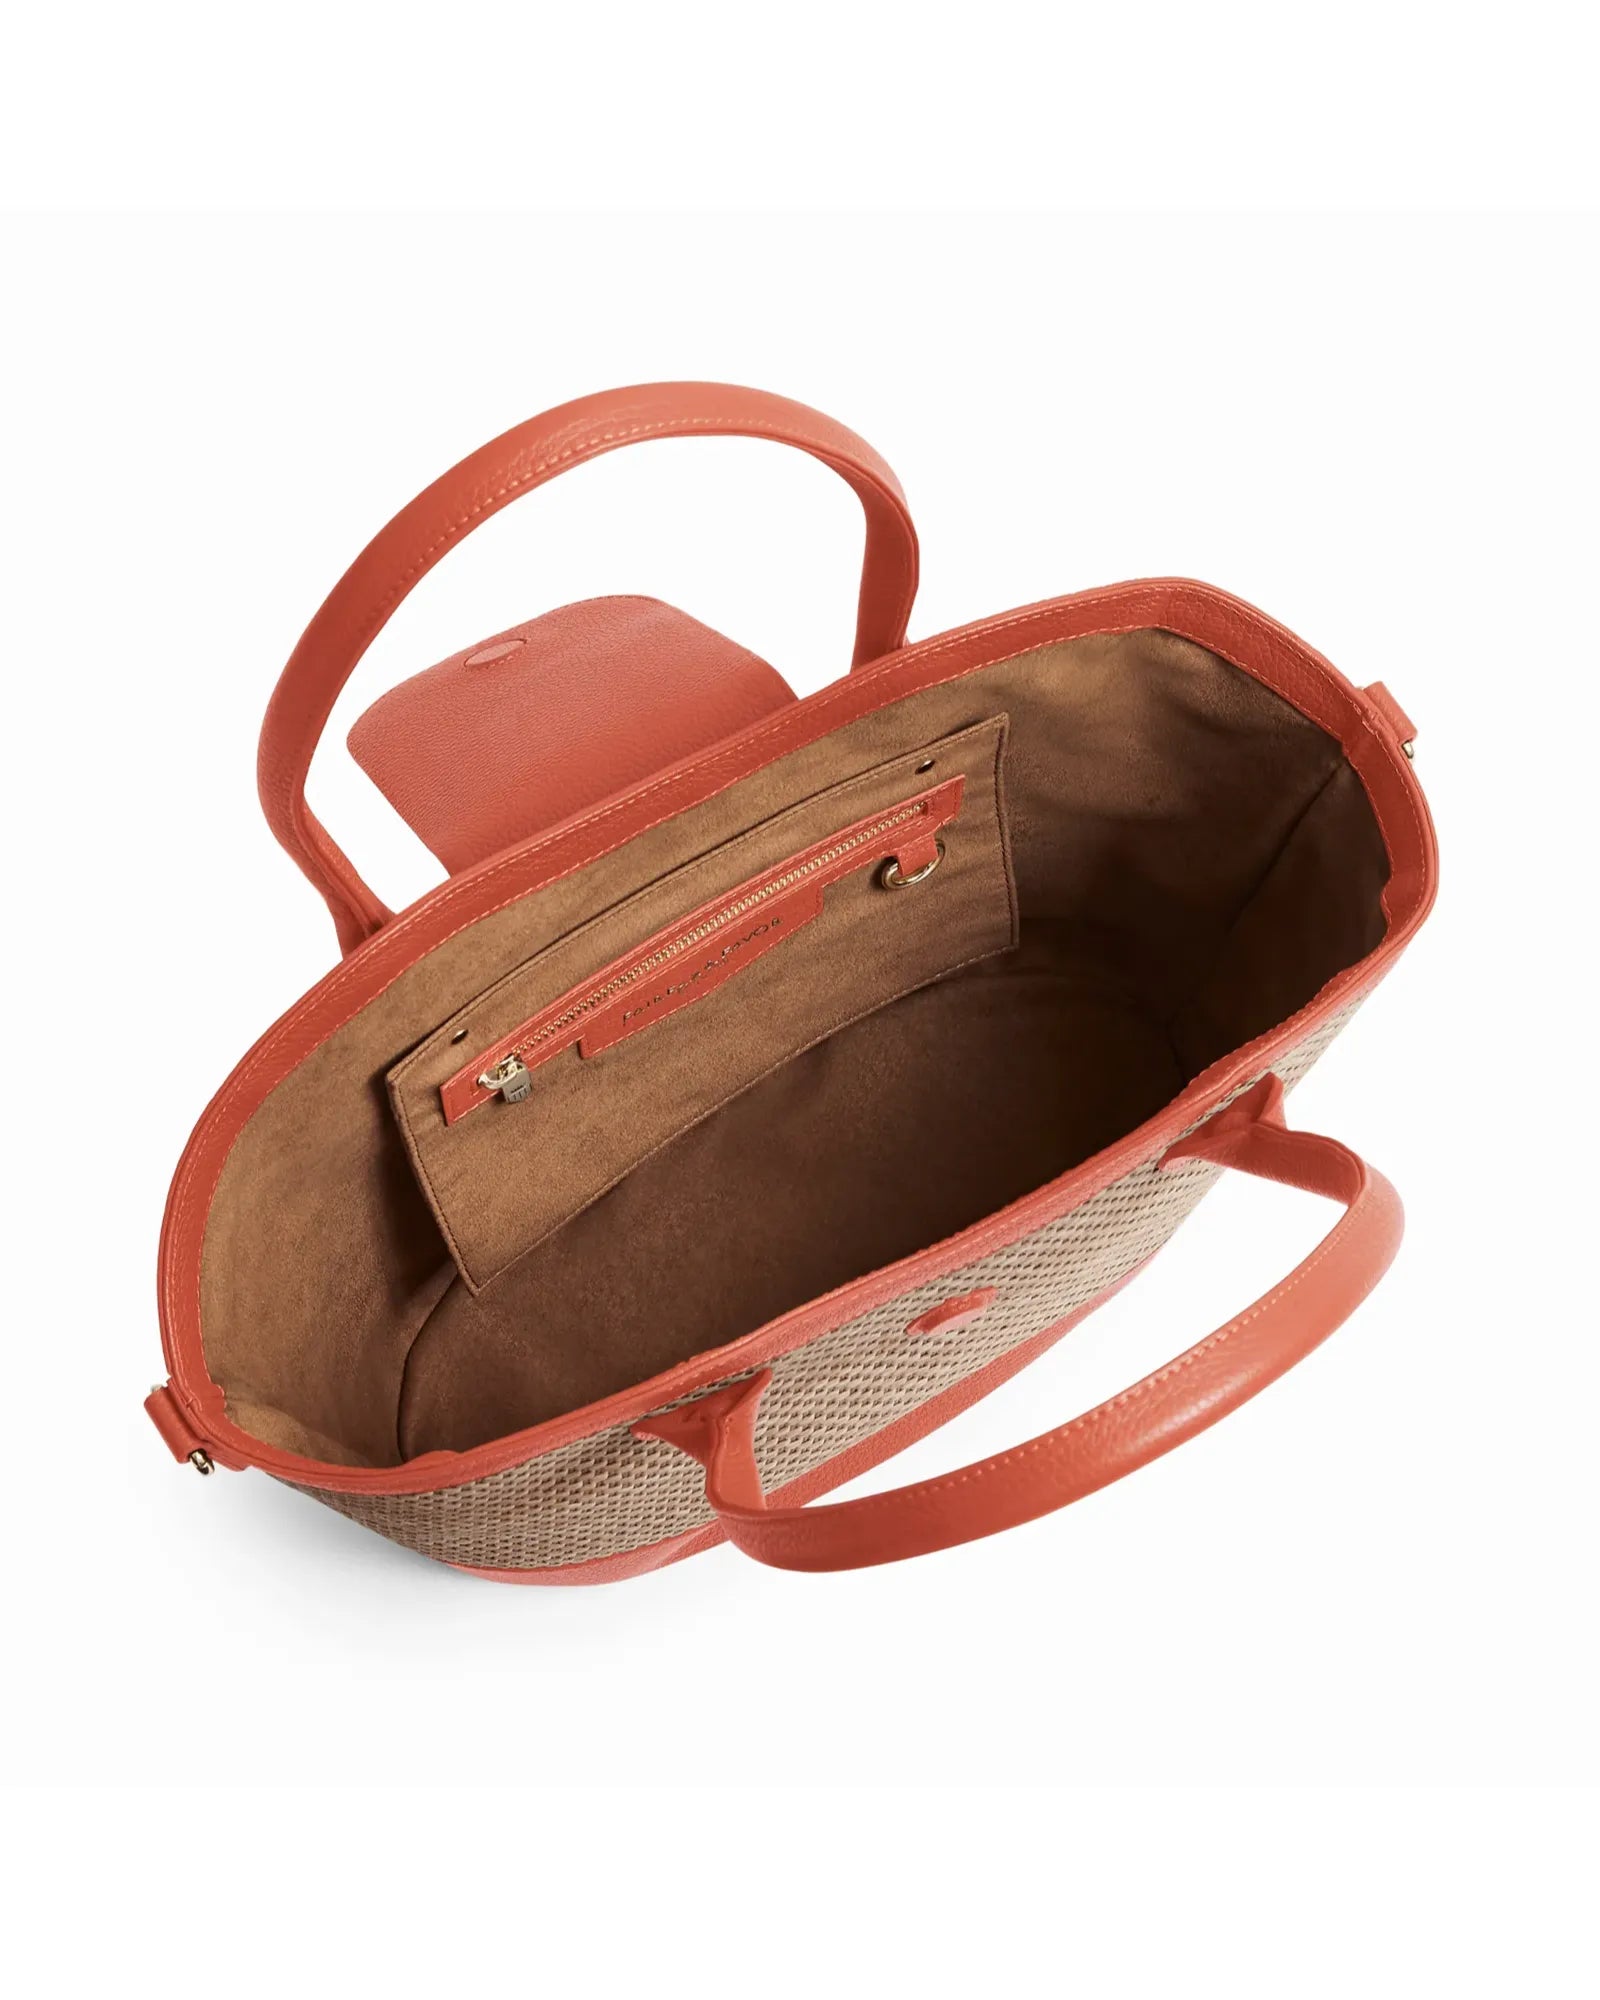 Windsor Basket Bag - Melon Leather